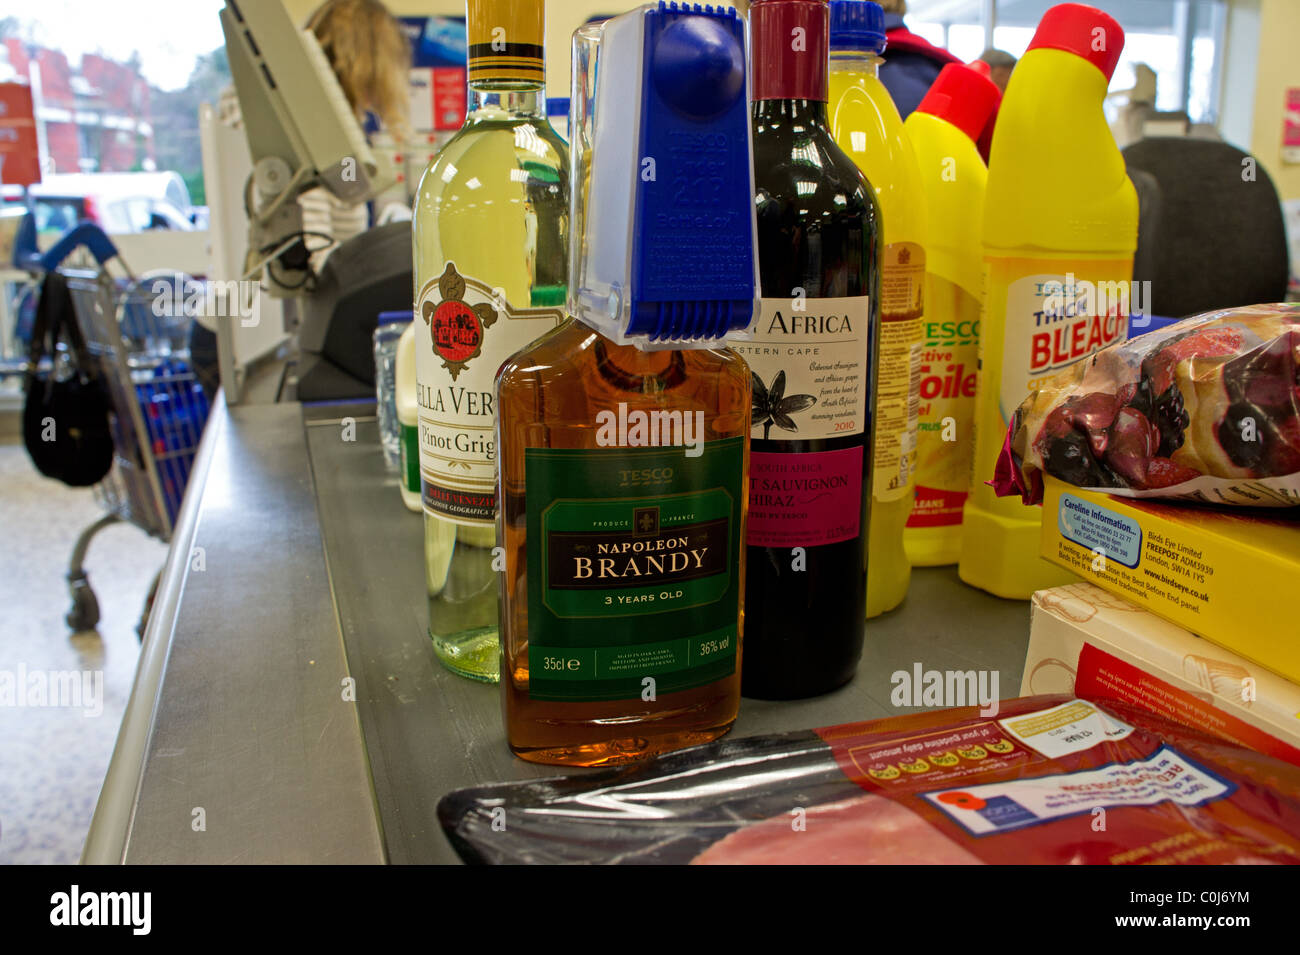 L'alcool et de l'épicerie sur un supermarché, uk Banque D'Images